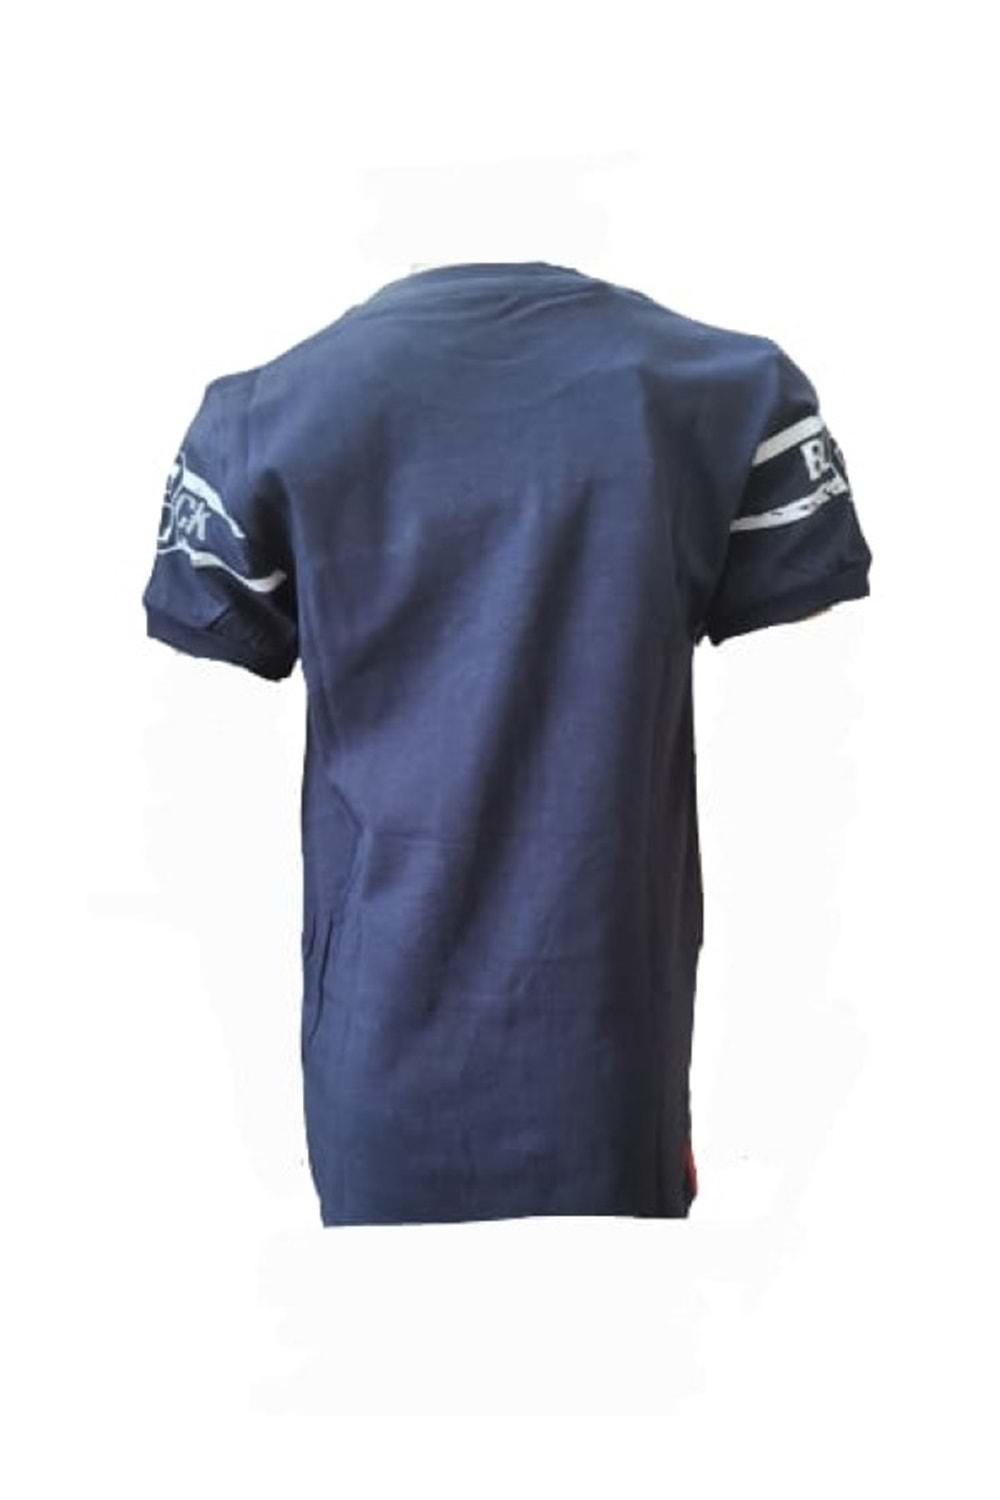 Petitox Çocuk Erkek Baskılı T-shirt 3003 - Lacivert - 4 YAŞ